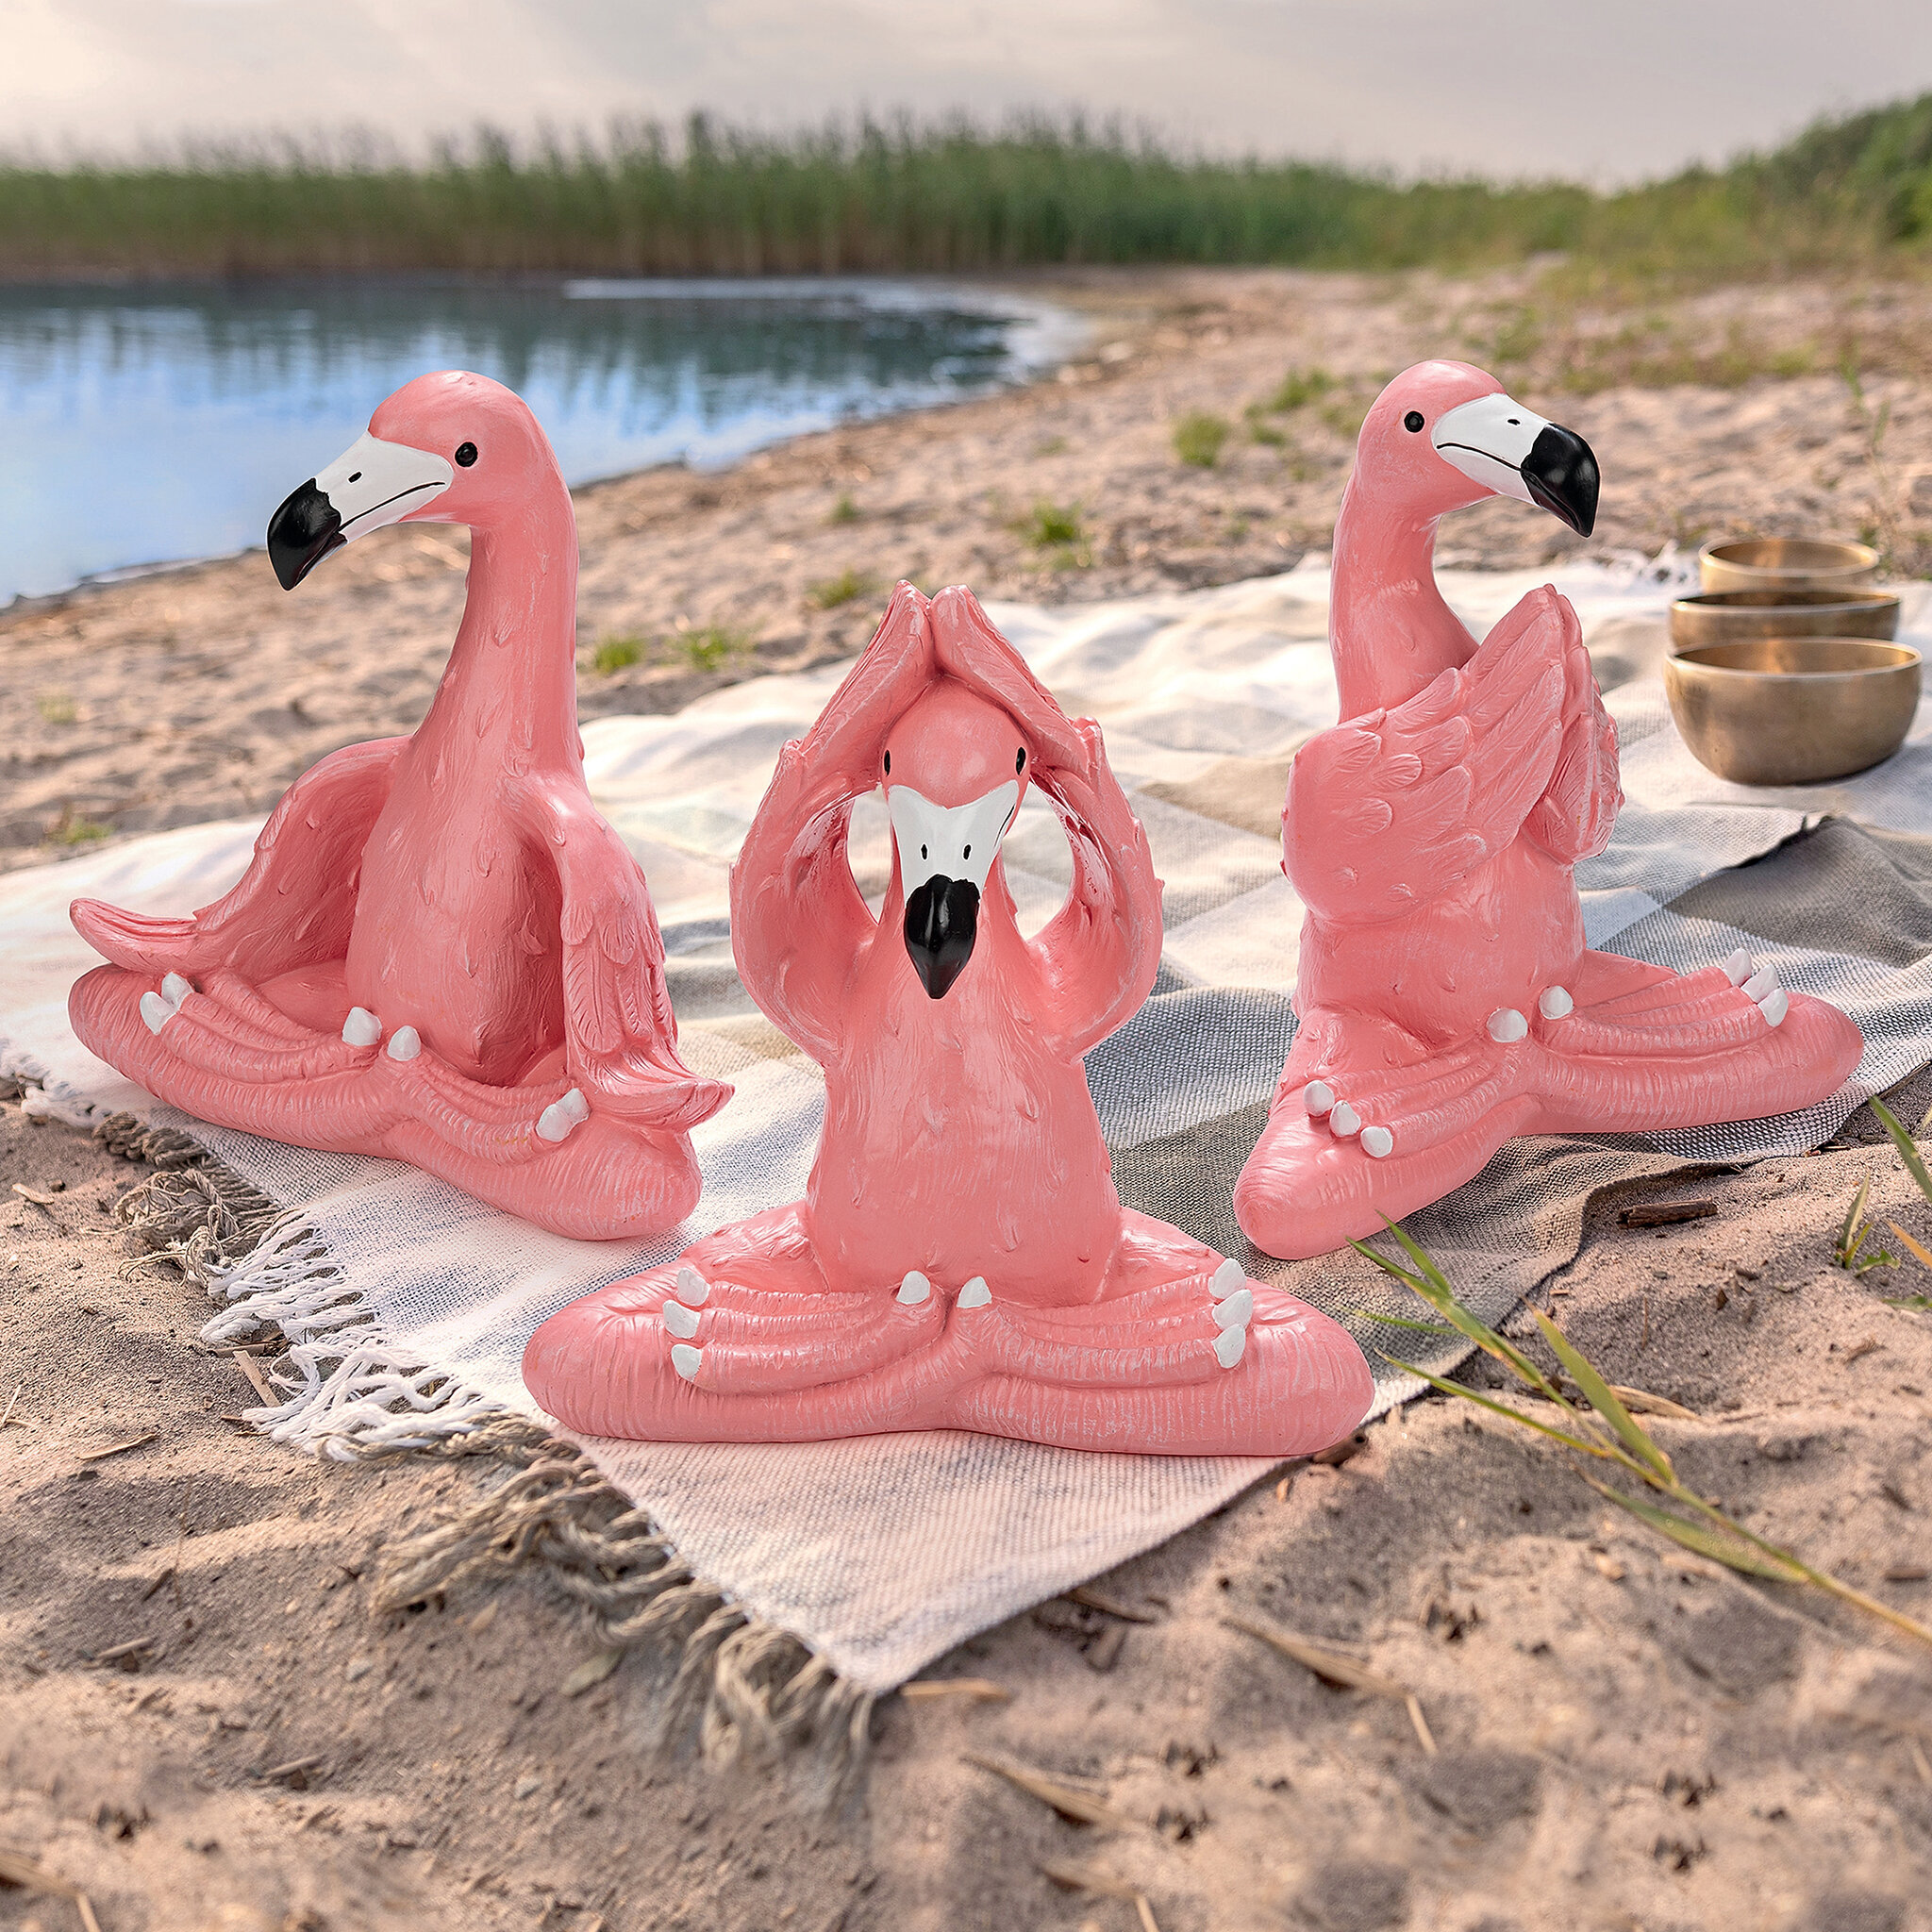 YOGA tutorials - Variations of Flamingo pose 🌱 | Facebook